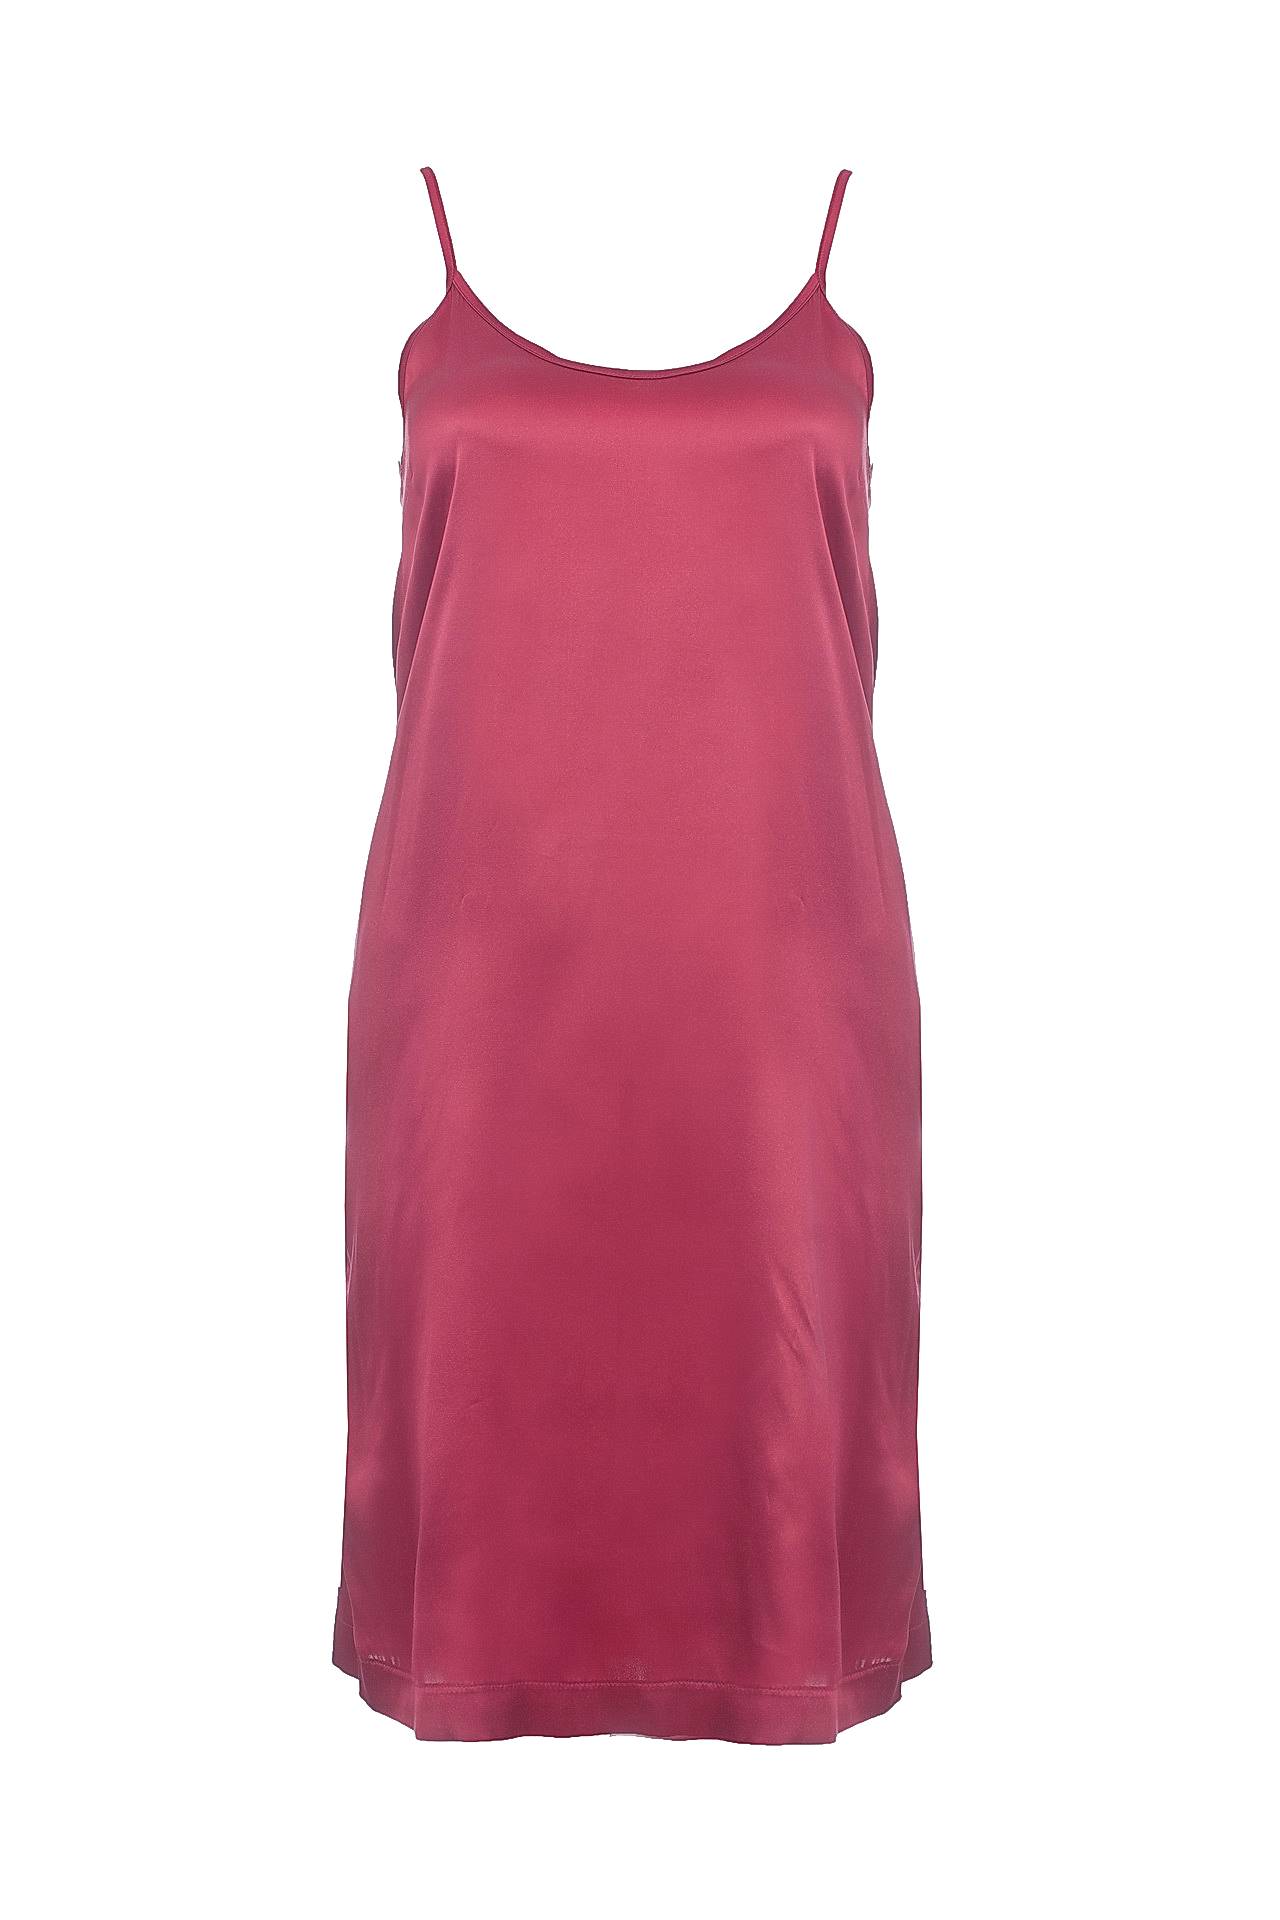 Одежда женская Платье LIVIANA CONTI (360/29). Купить за 7250 руб.